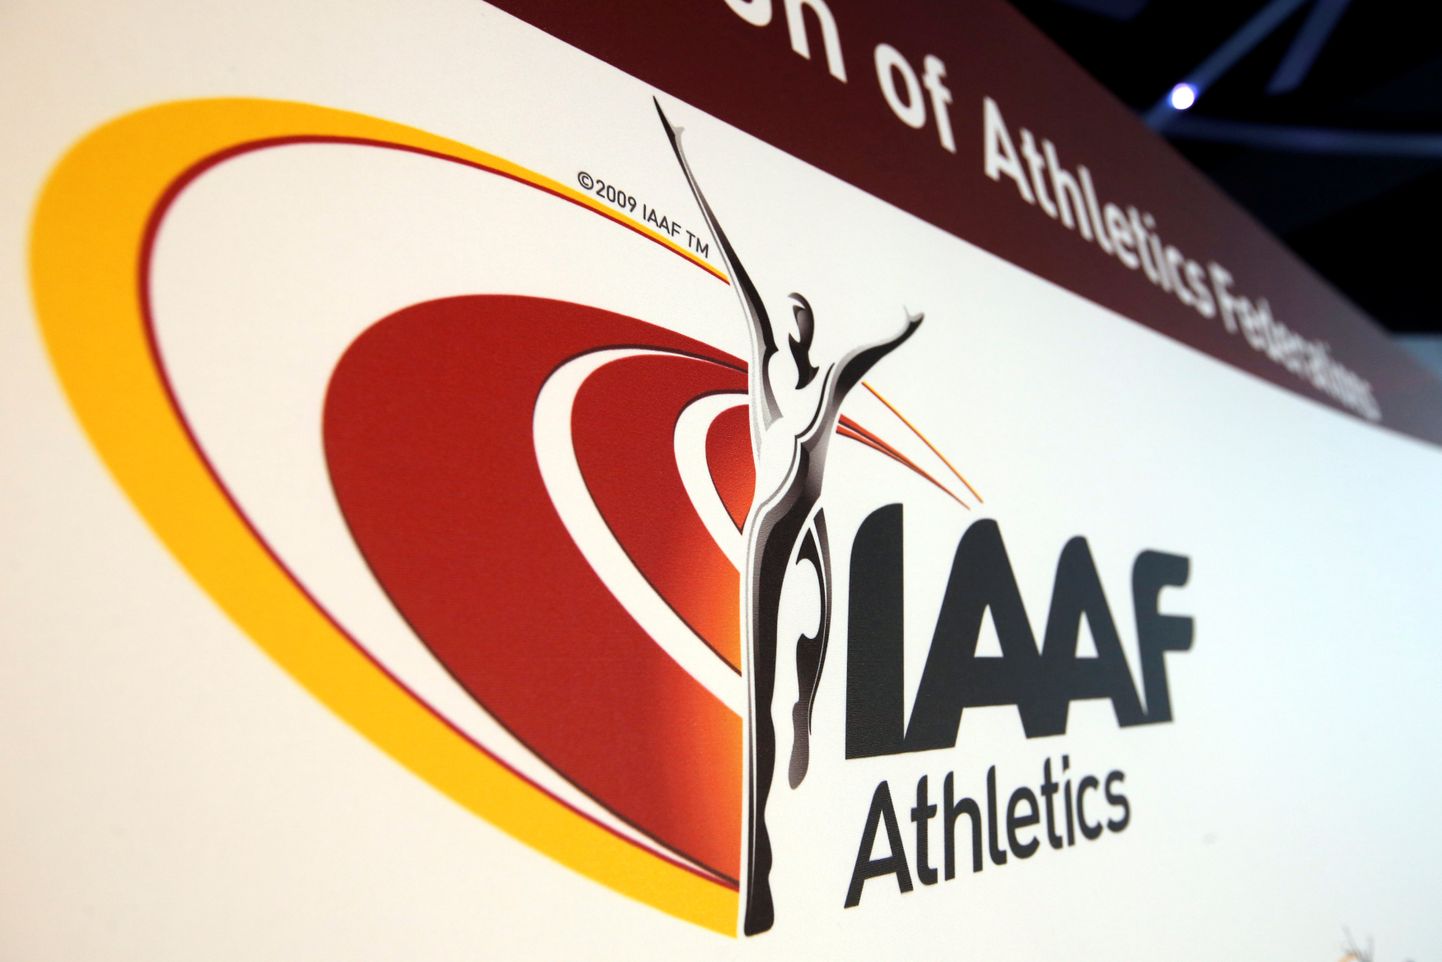 Starptautiskās Vieglatlētikas federācijas (IAAF) logo